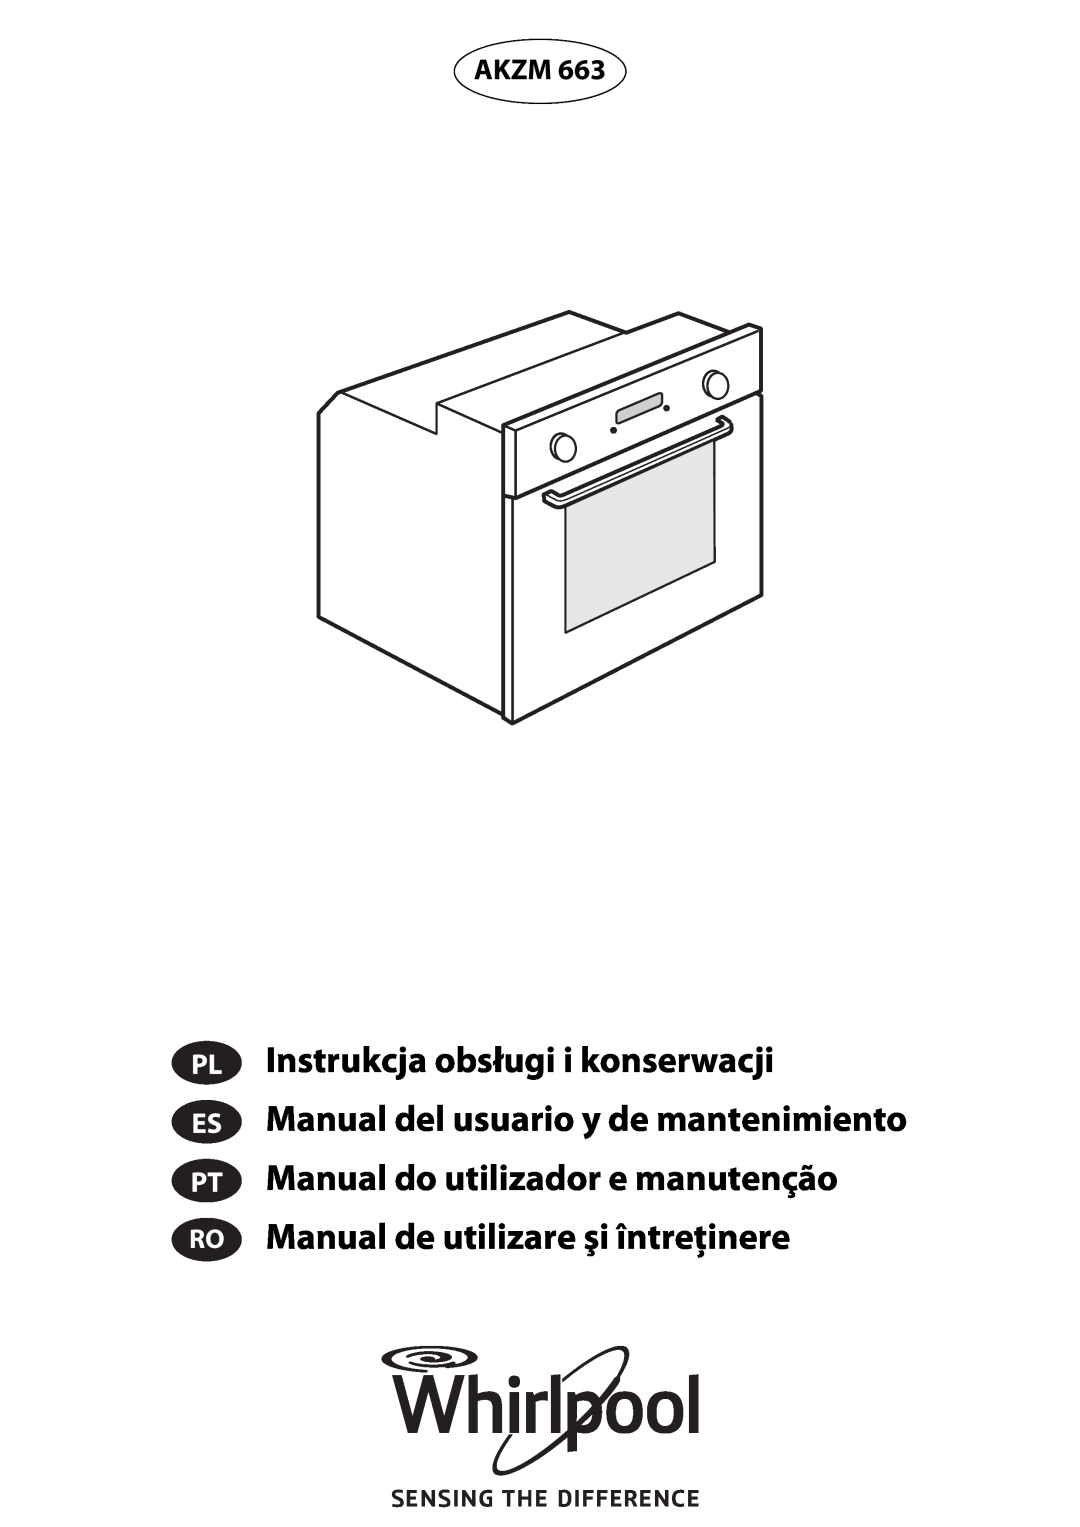 Whirlpool 663 manual do utilizador Instrukcja obsługi i konserwacji, Manual del usuario y de mantenimiento, Akzm 